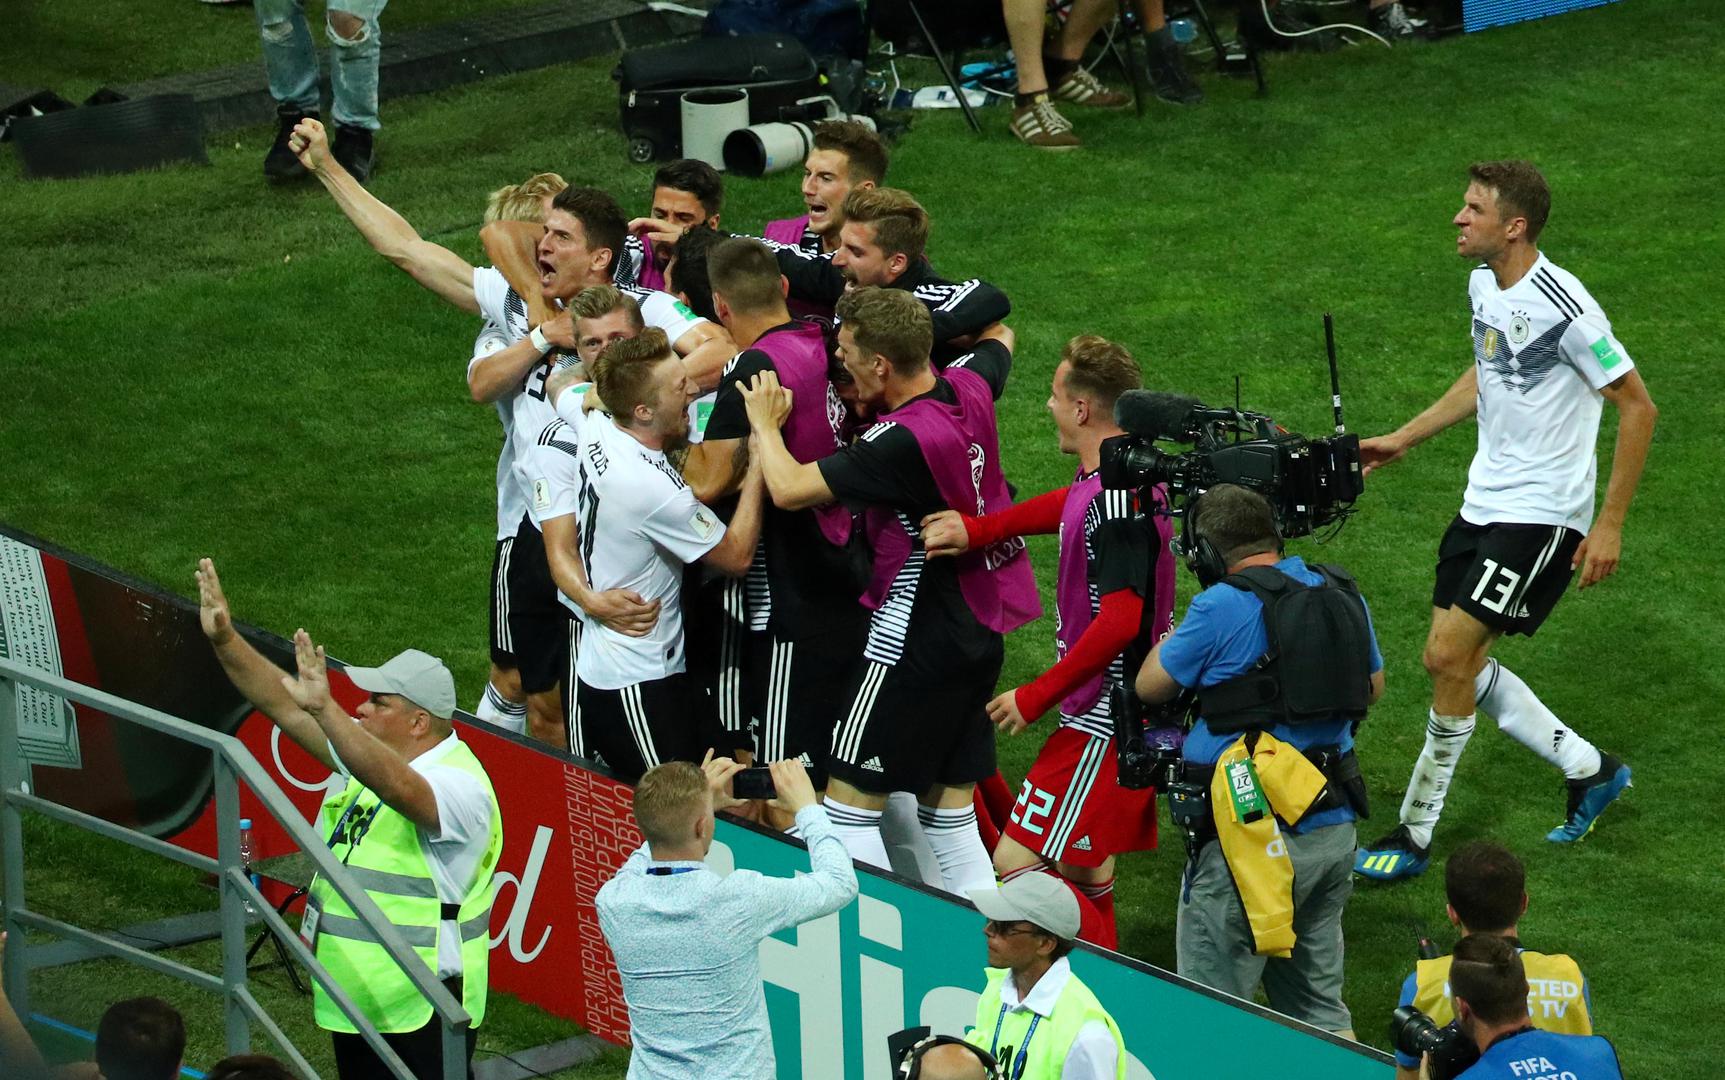 Rezultat na semaforu pokazivao je 1:1, Njemačka je bila na pragu ispadanja sa Svjetskog prvenstva, a onda se ukazao Toni Kroos i zabio golčinu za pobjedu 2:1.

